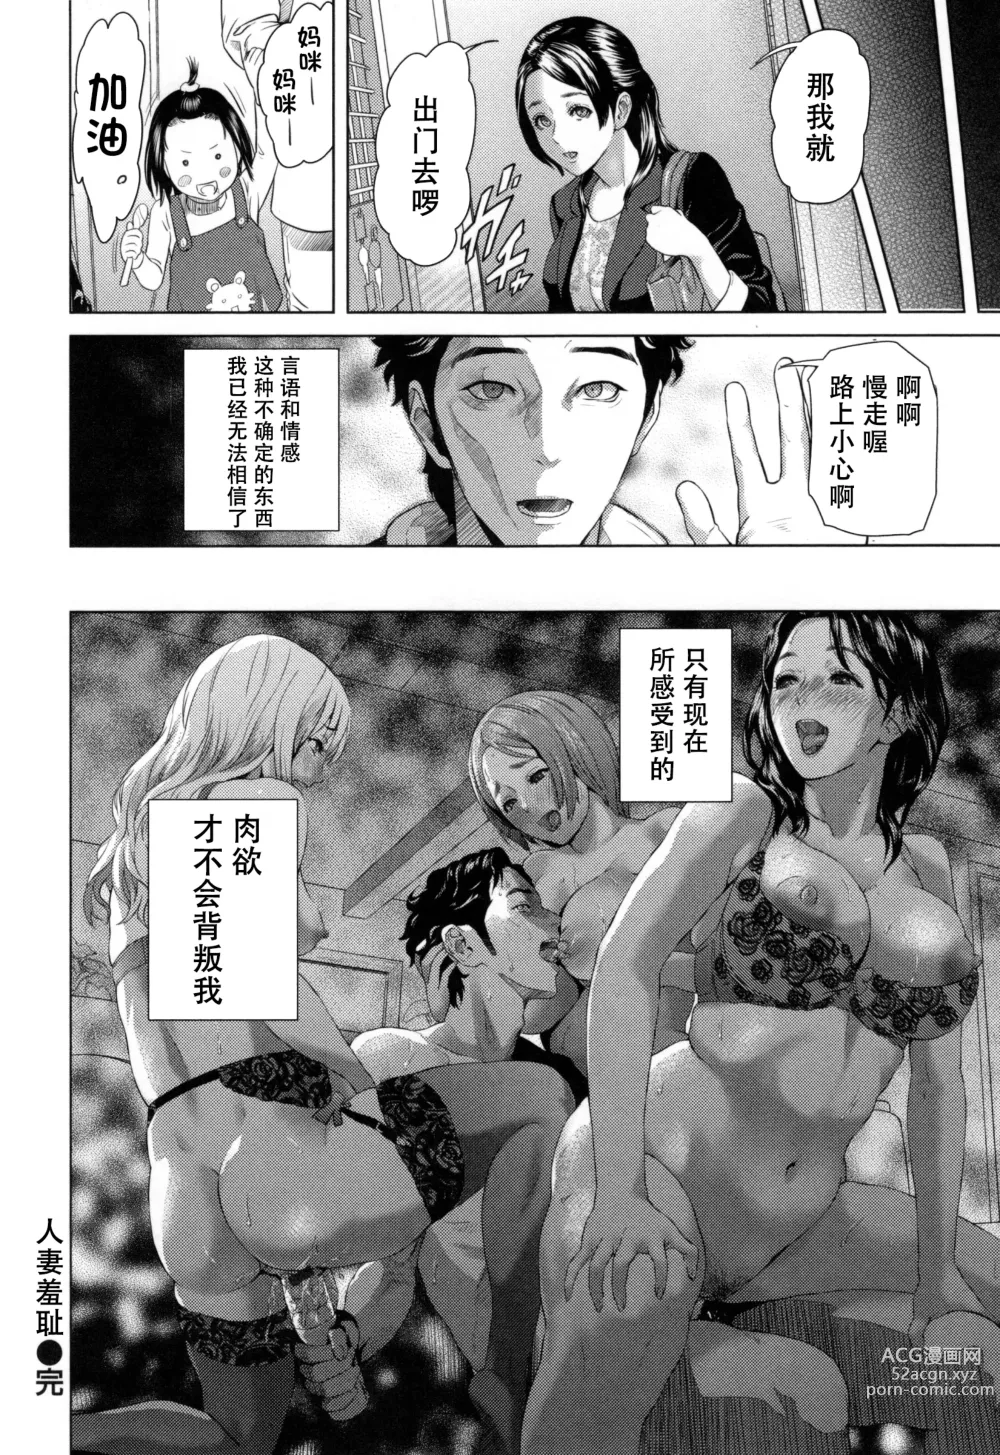 Page 213 of manga Jukuren no Wana